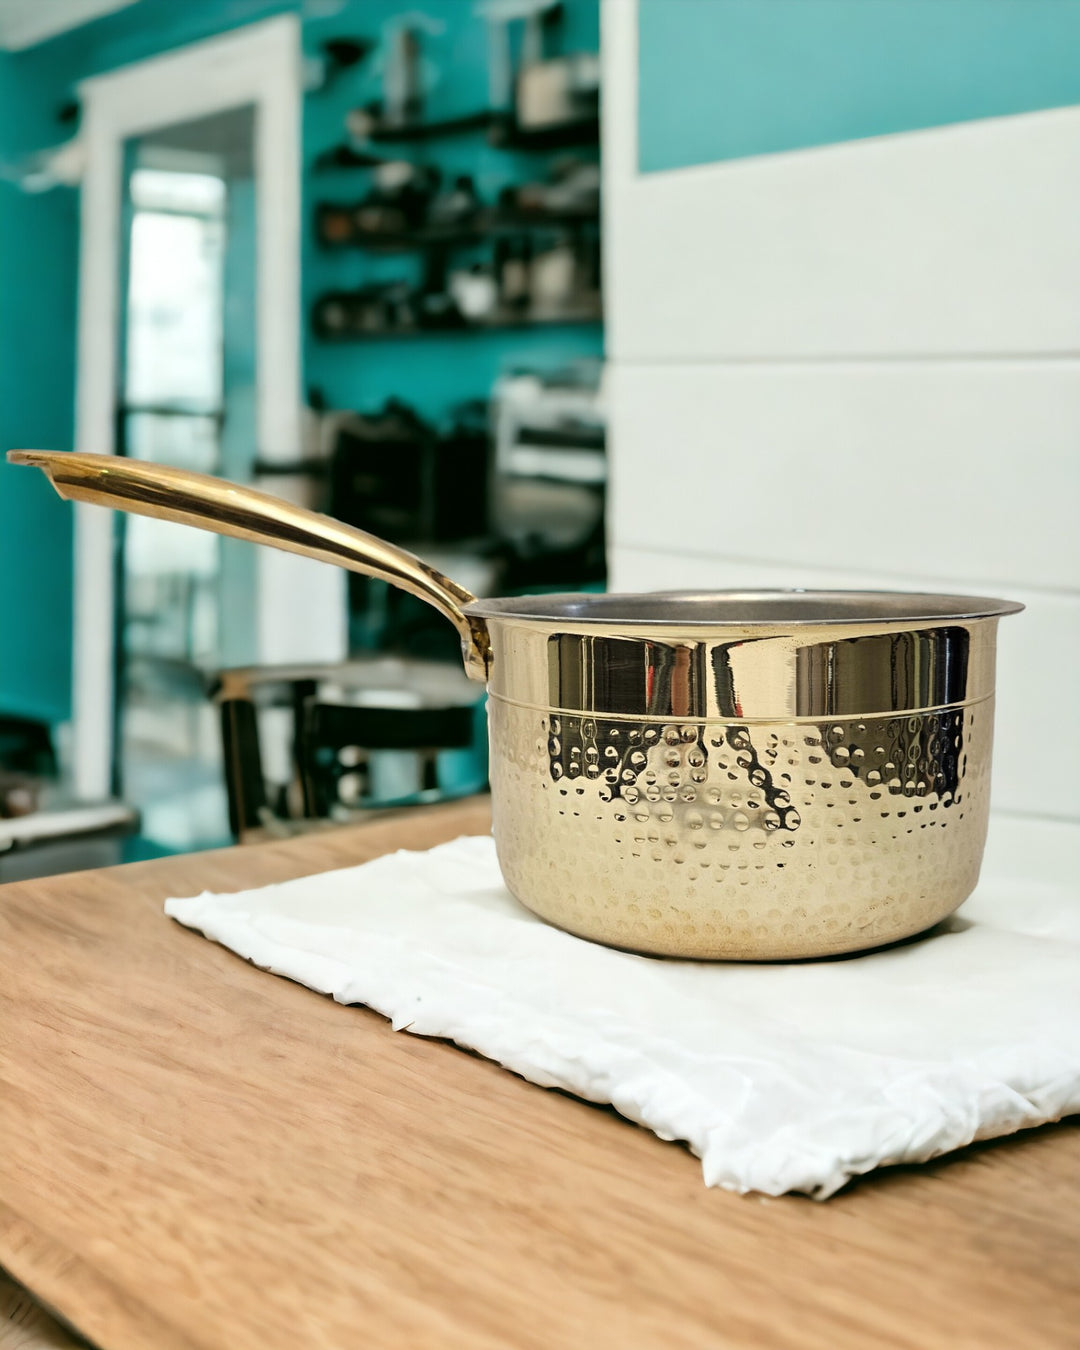 Brass Saucepan With Tin Coating